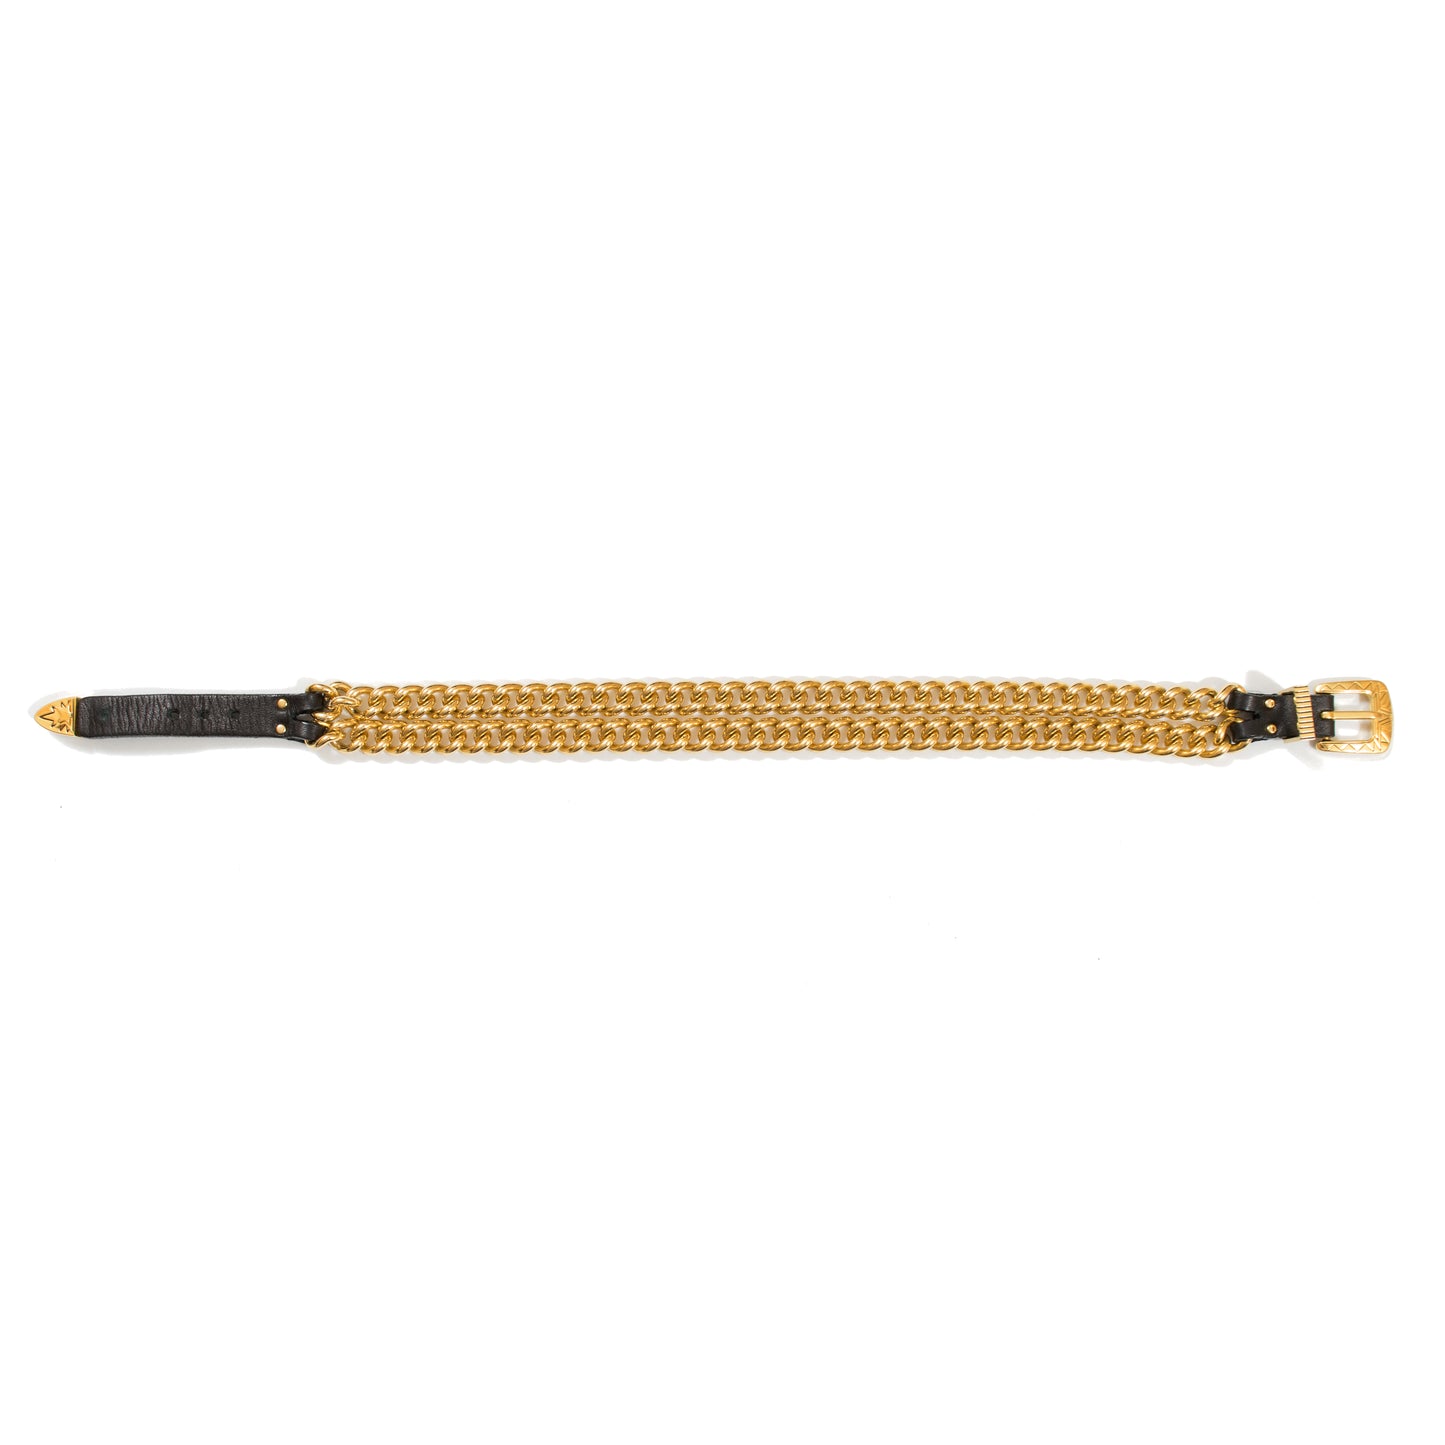 Ambush Design Gold Chain Belt Bracelet/Choker